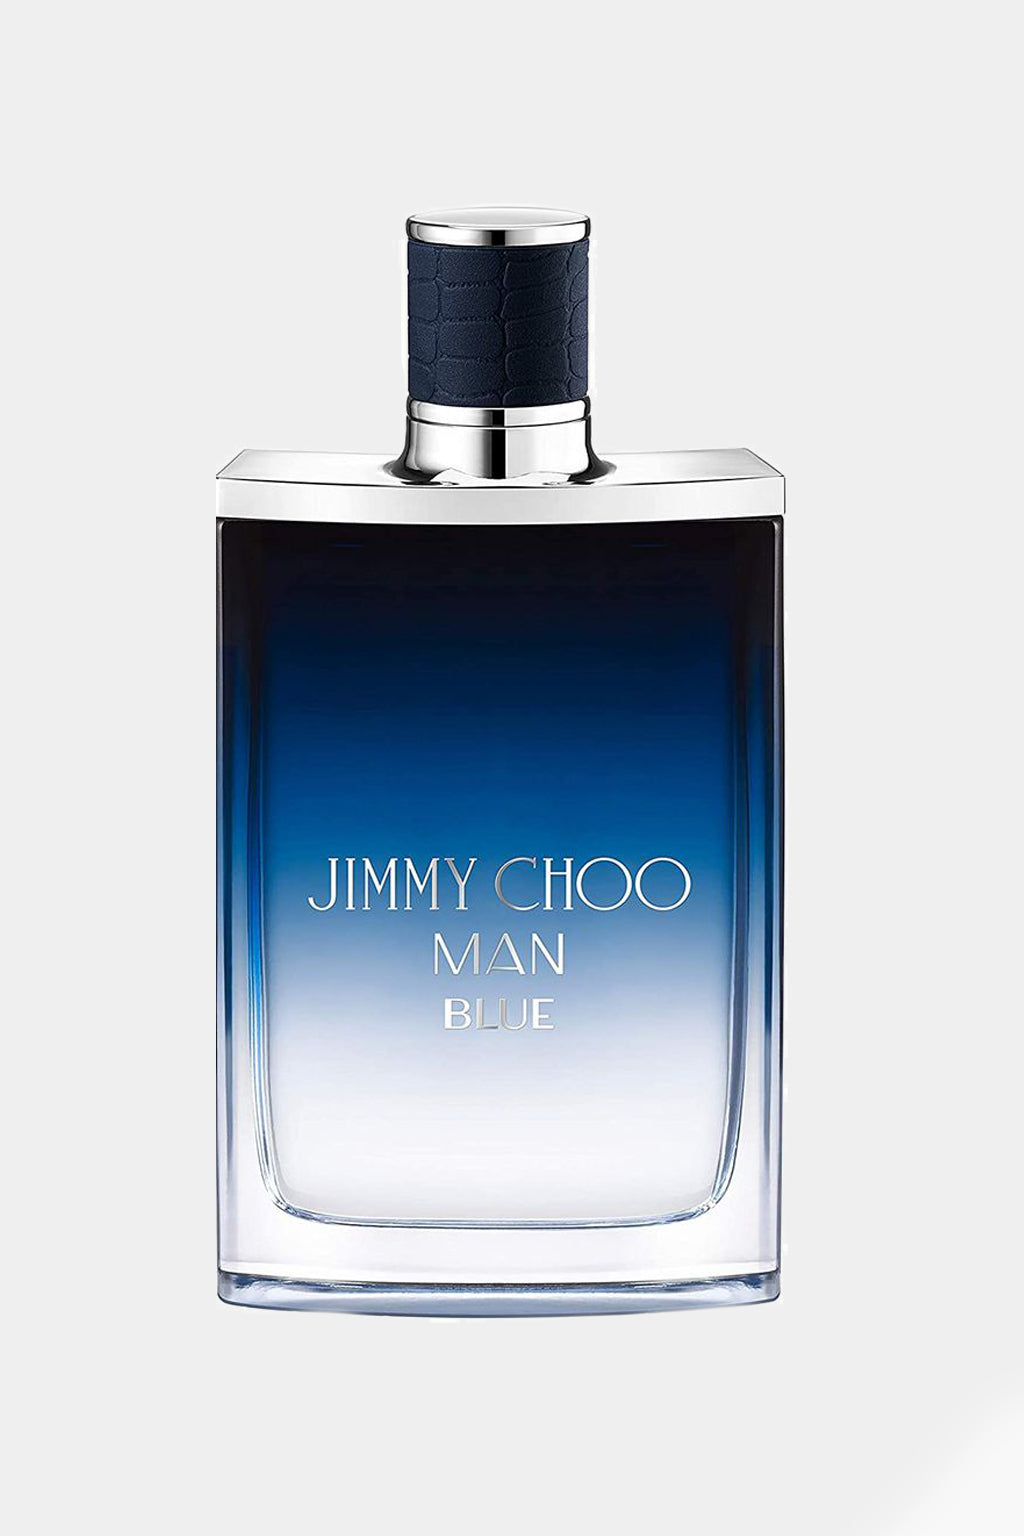 Jimmy Choo - Man Blue Eau De Toilette spray, 100ml